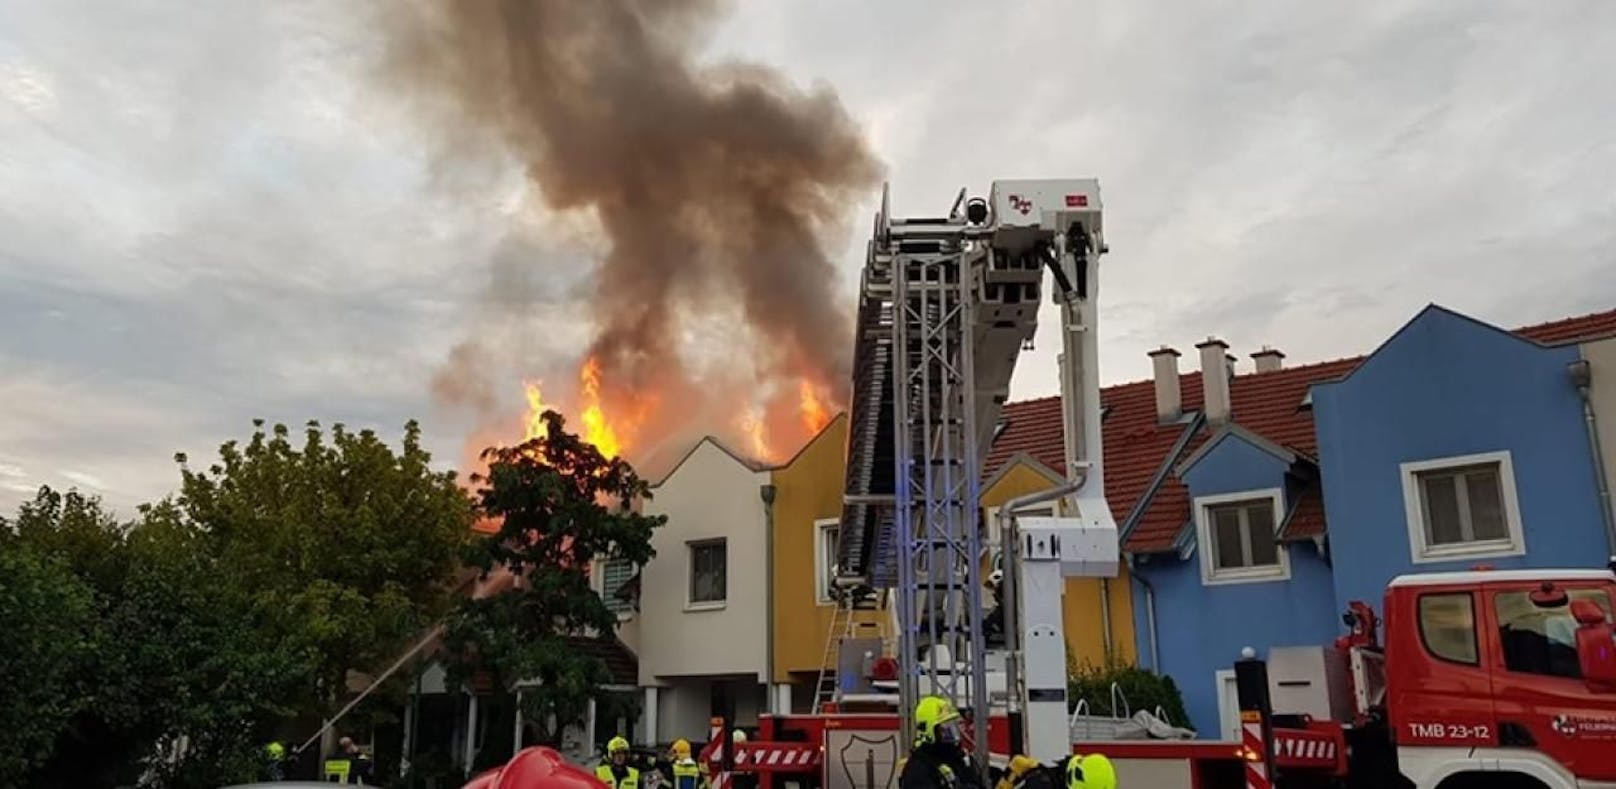 Die Flammen waren mehrere Meter hoch.